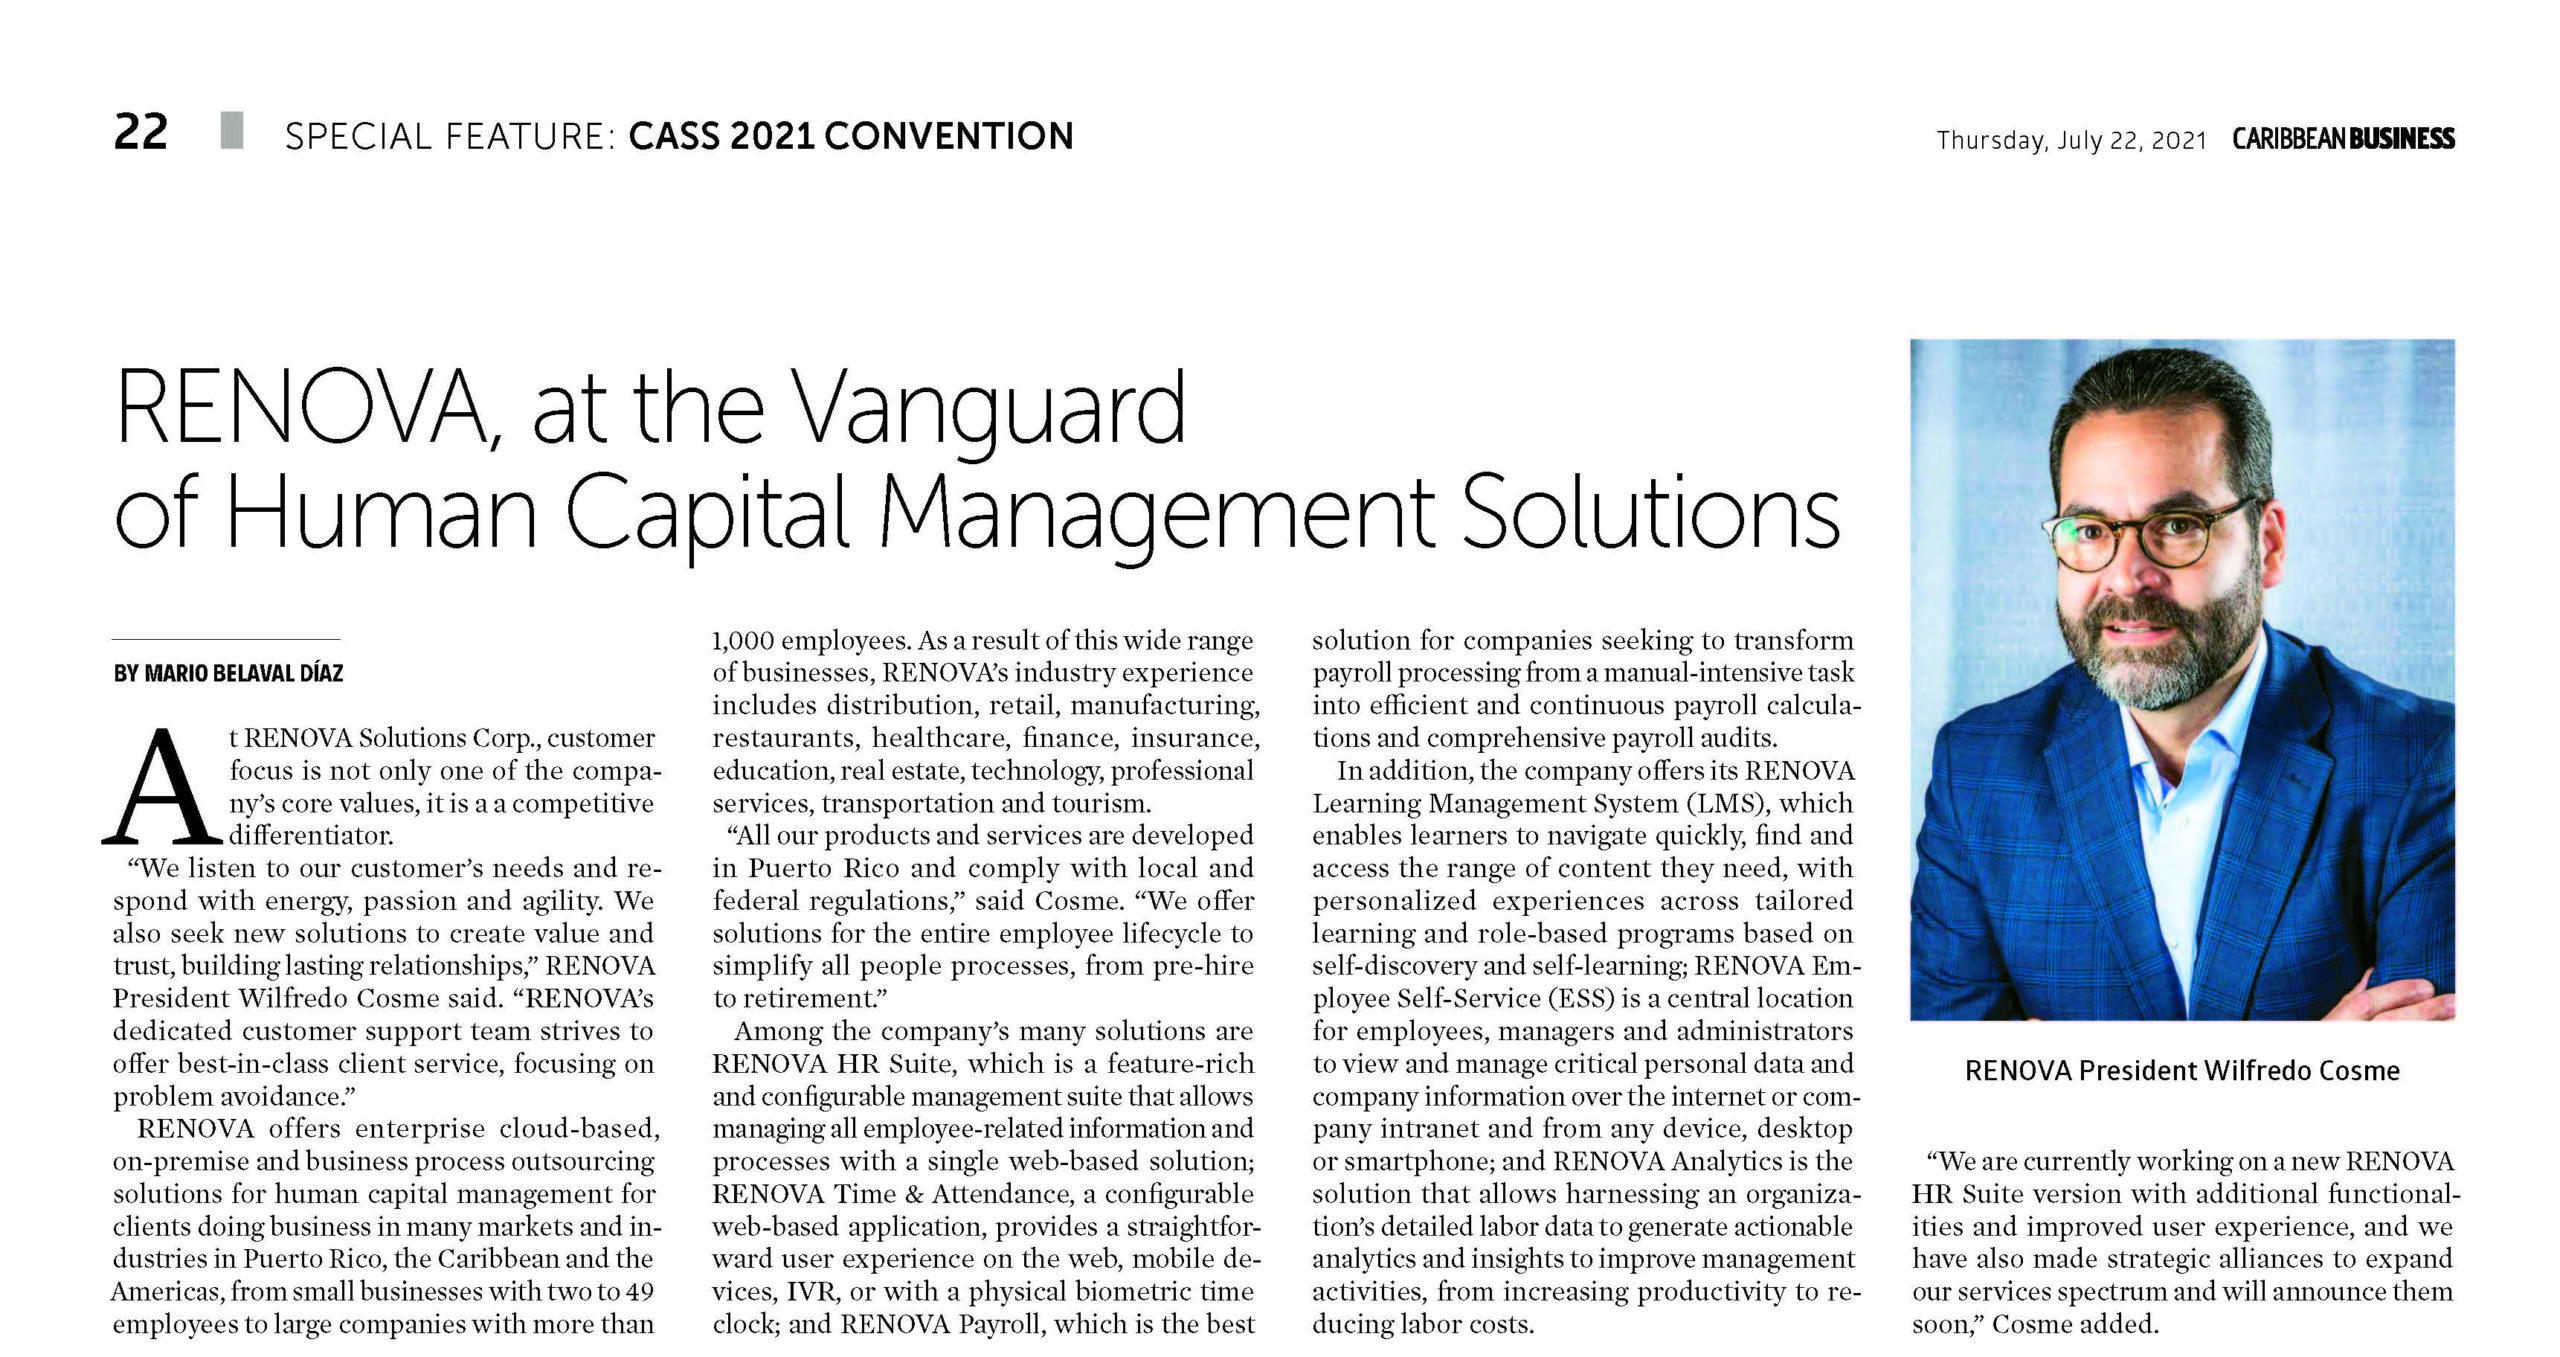 RENOVA, at the vanguard of Human Capital Management Solutions